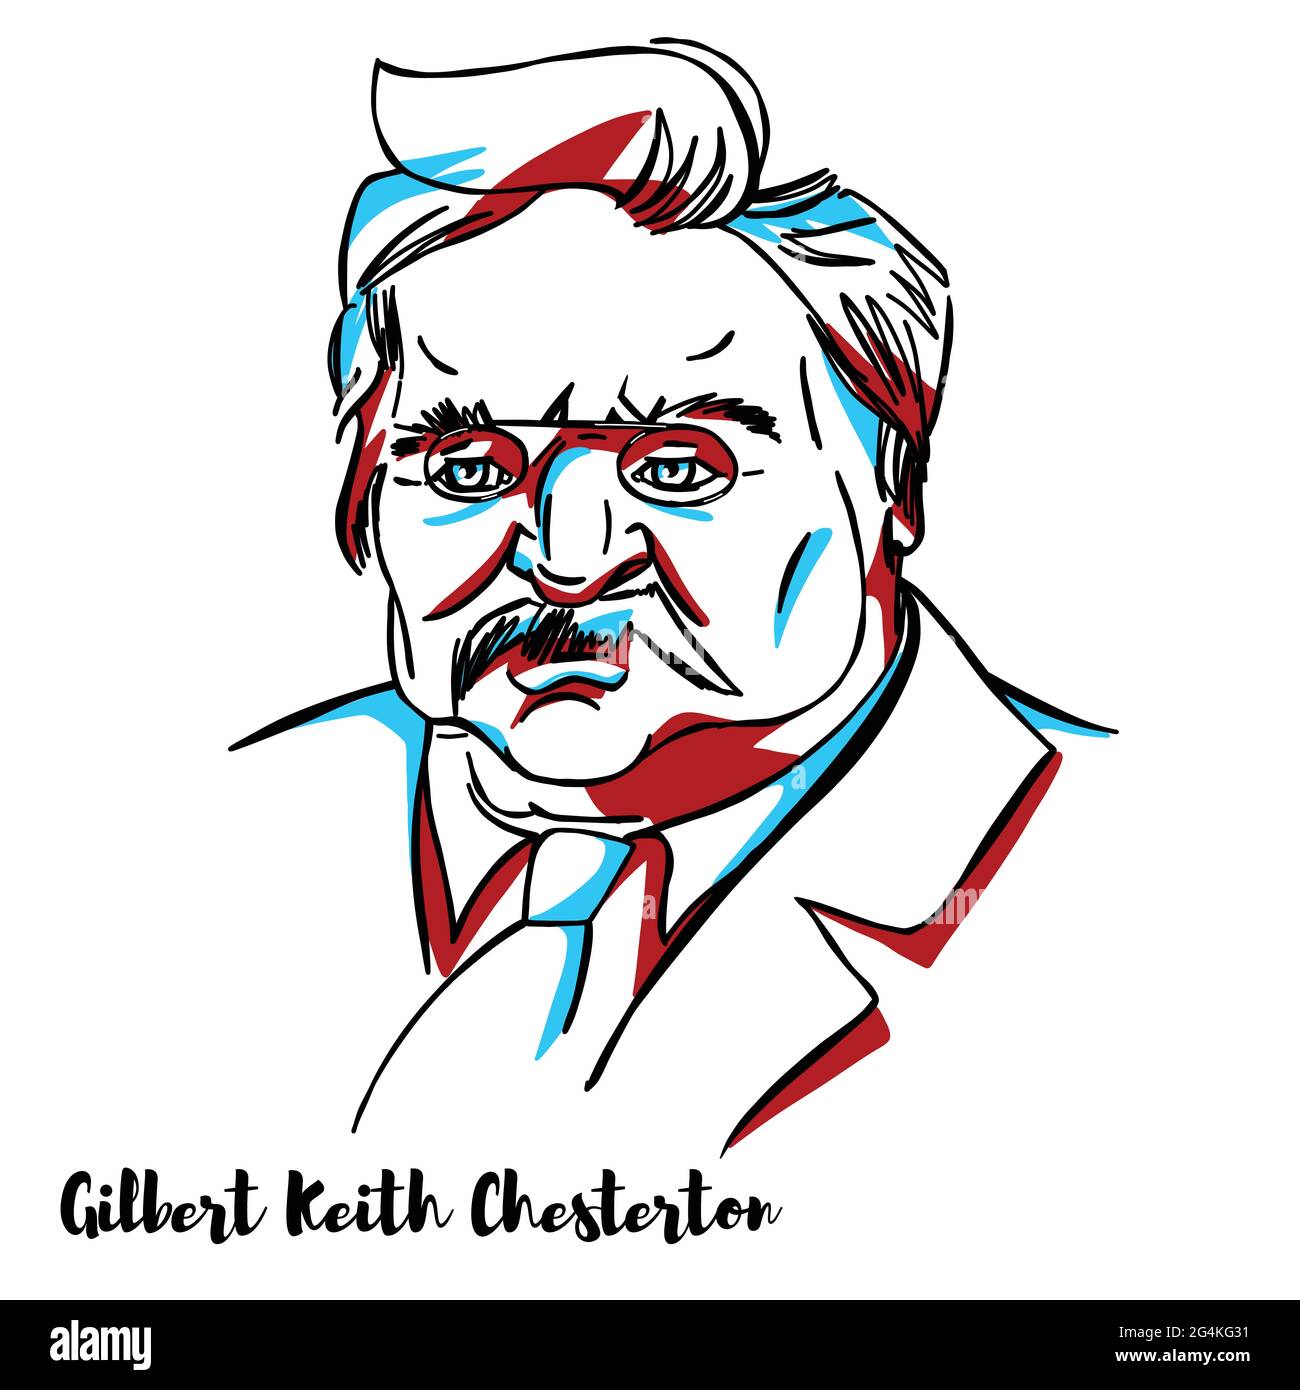 Gilbert Keith Chesterton ritratto vettoriale inciso con contorni di inchiostro. Scrittore inglese, filosofo, teologo laico e critico letterario e artistico. Ha Illustrazione Vettoriale